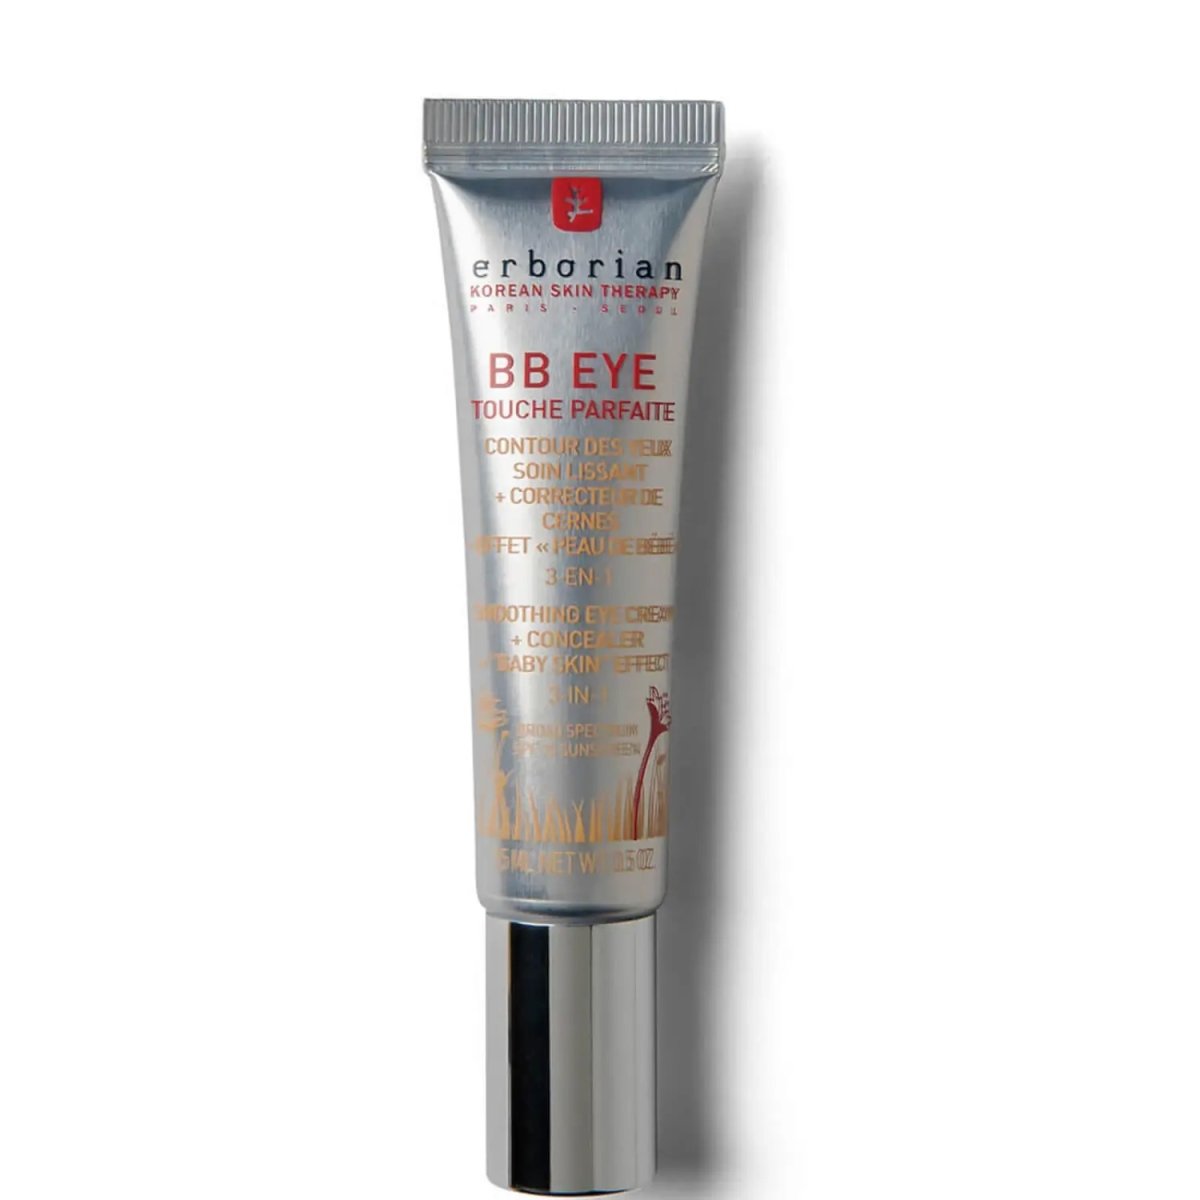 BB EYE TOUCHE PARFAITE - Crema idratante occhi 3 in 1, correttore anti-età ad alta coprenza con SPF20 - Infinity Concept Store